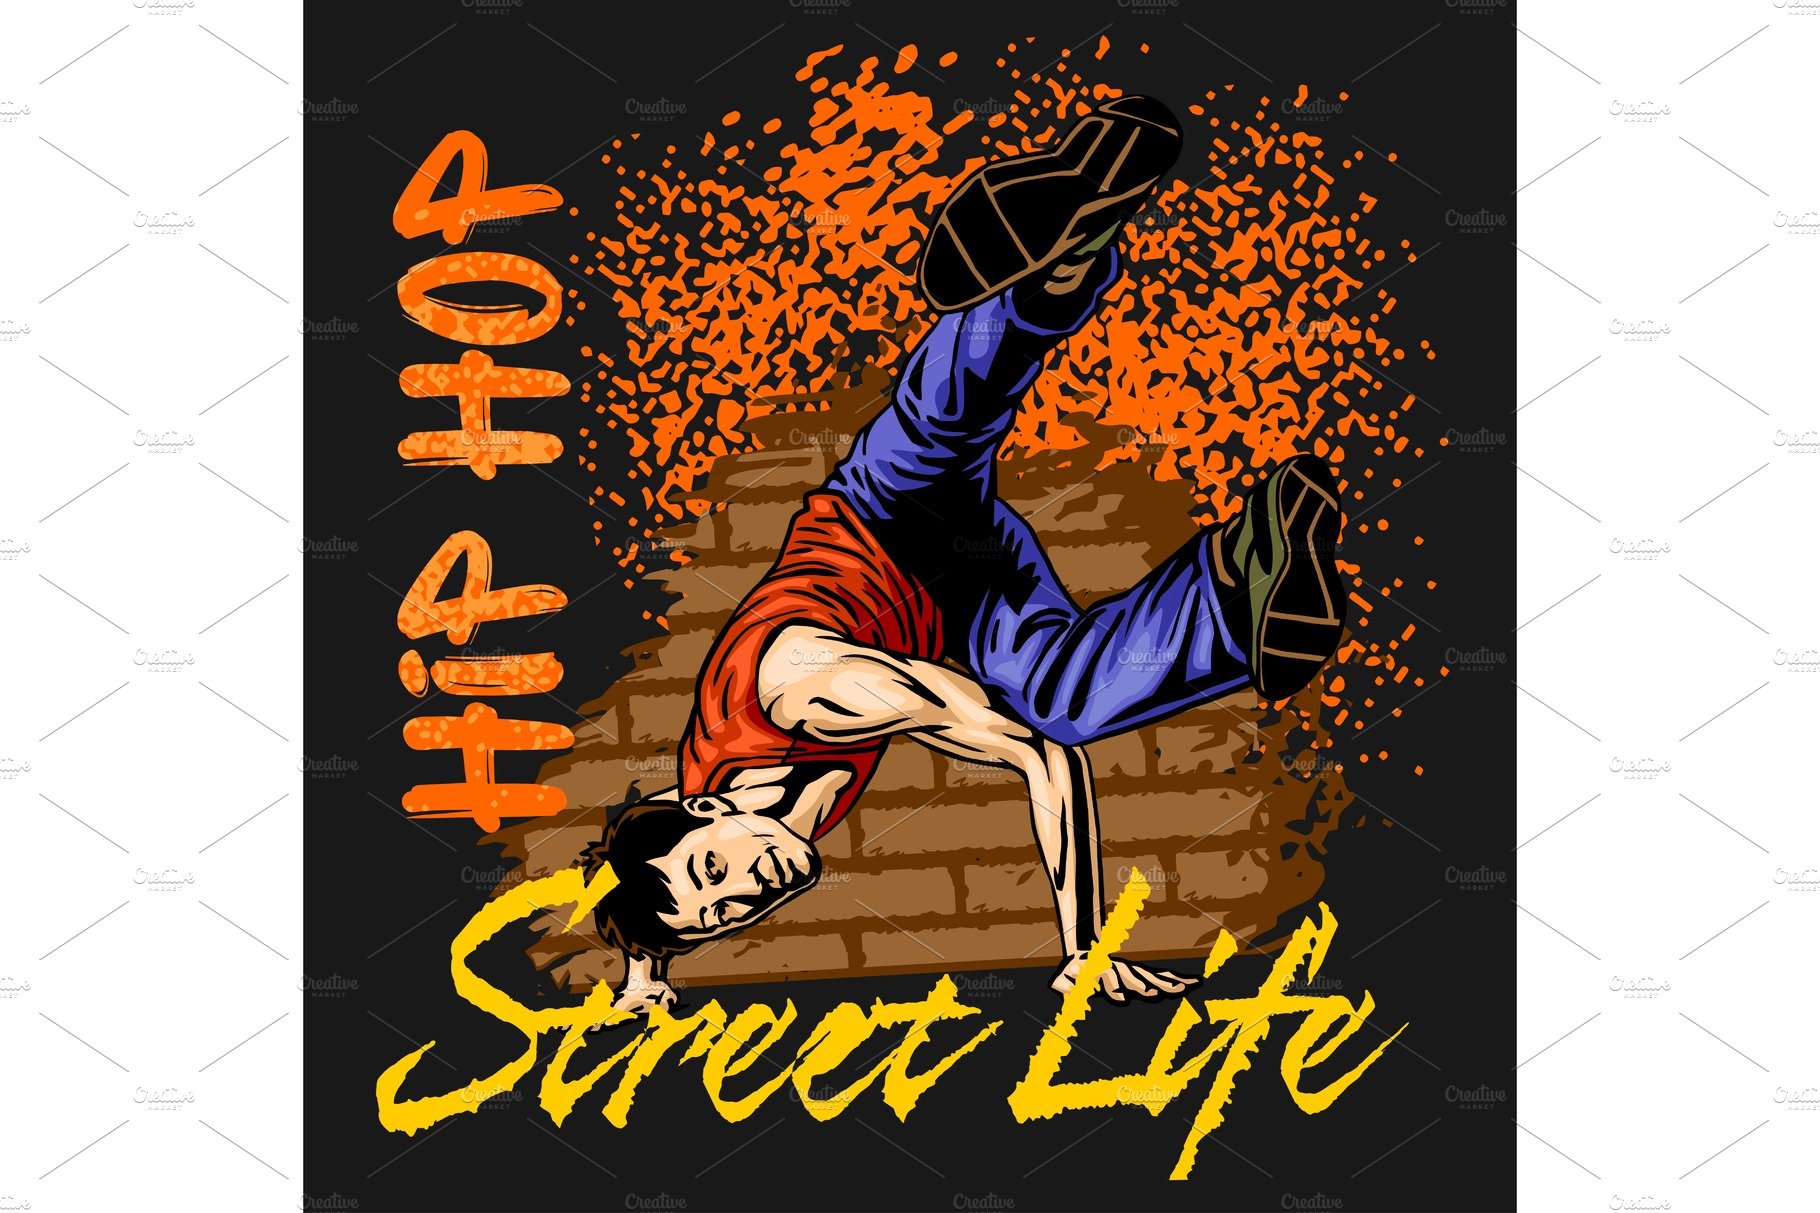 Hip hop dancer on grunge background cover image.